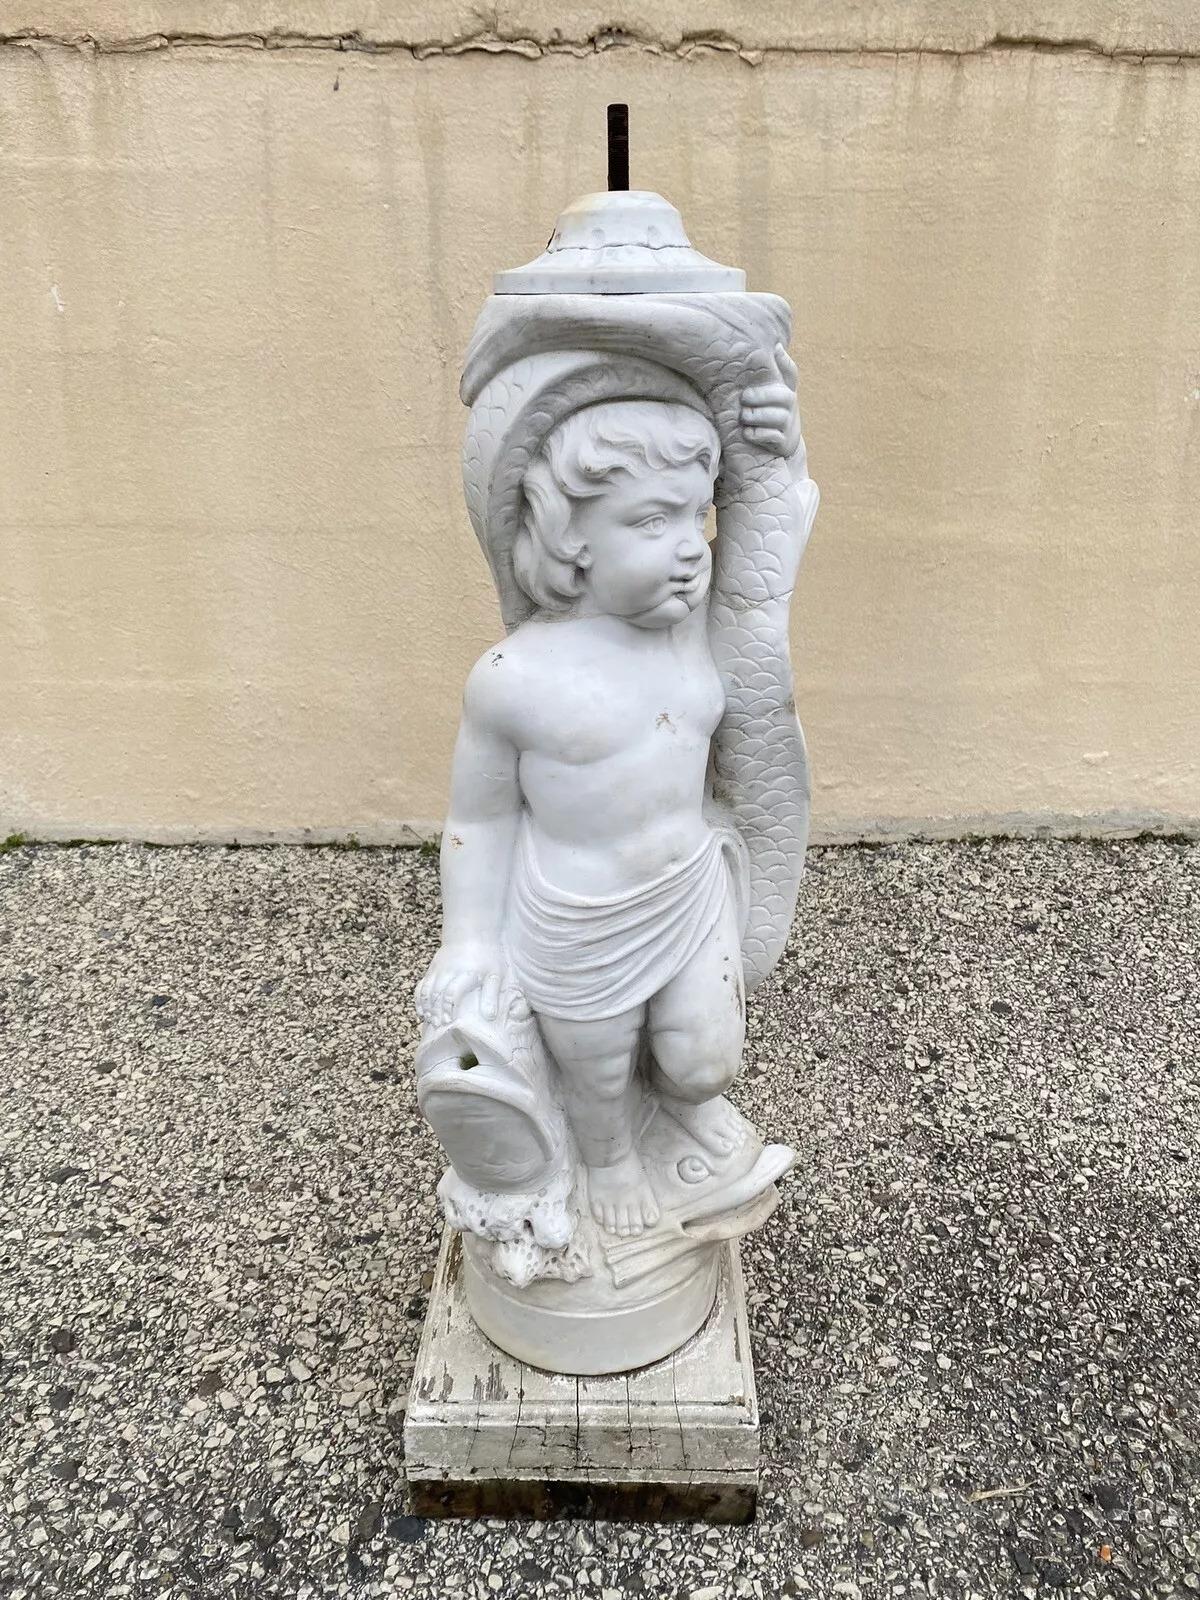 Statue de fontaine de jardin en marbre sculpté de chérubin et dauphin. L'article est caractérisé par un poids d'environ 70 livres. Nous ne savons pas si la fontaine fonctionne. La statue de marbre est montée sur un socle en bois et il n'y a pas de